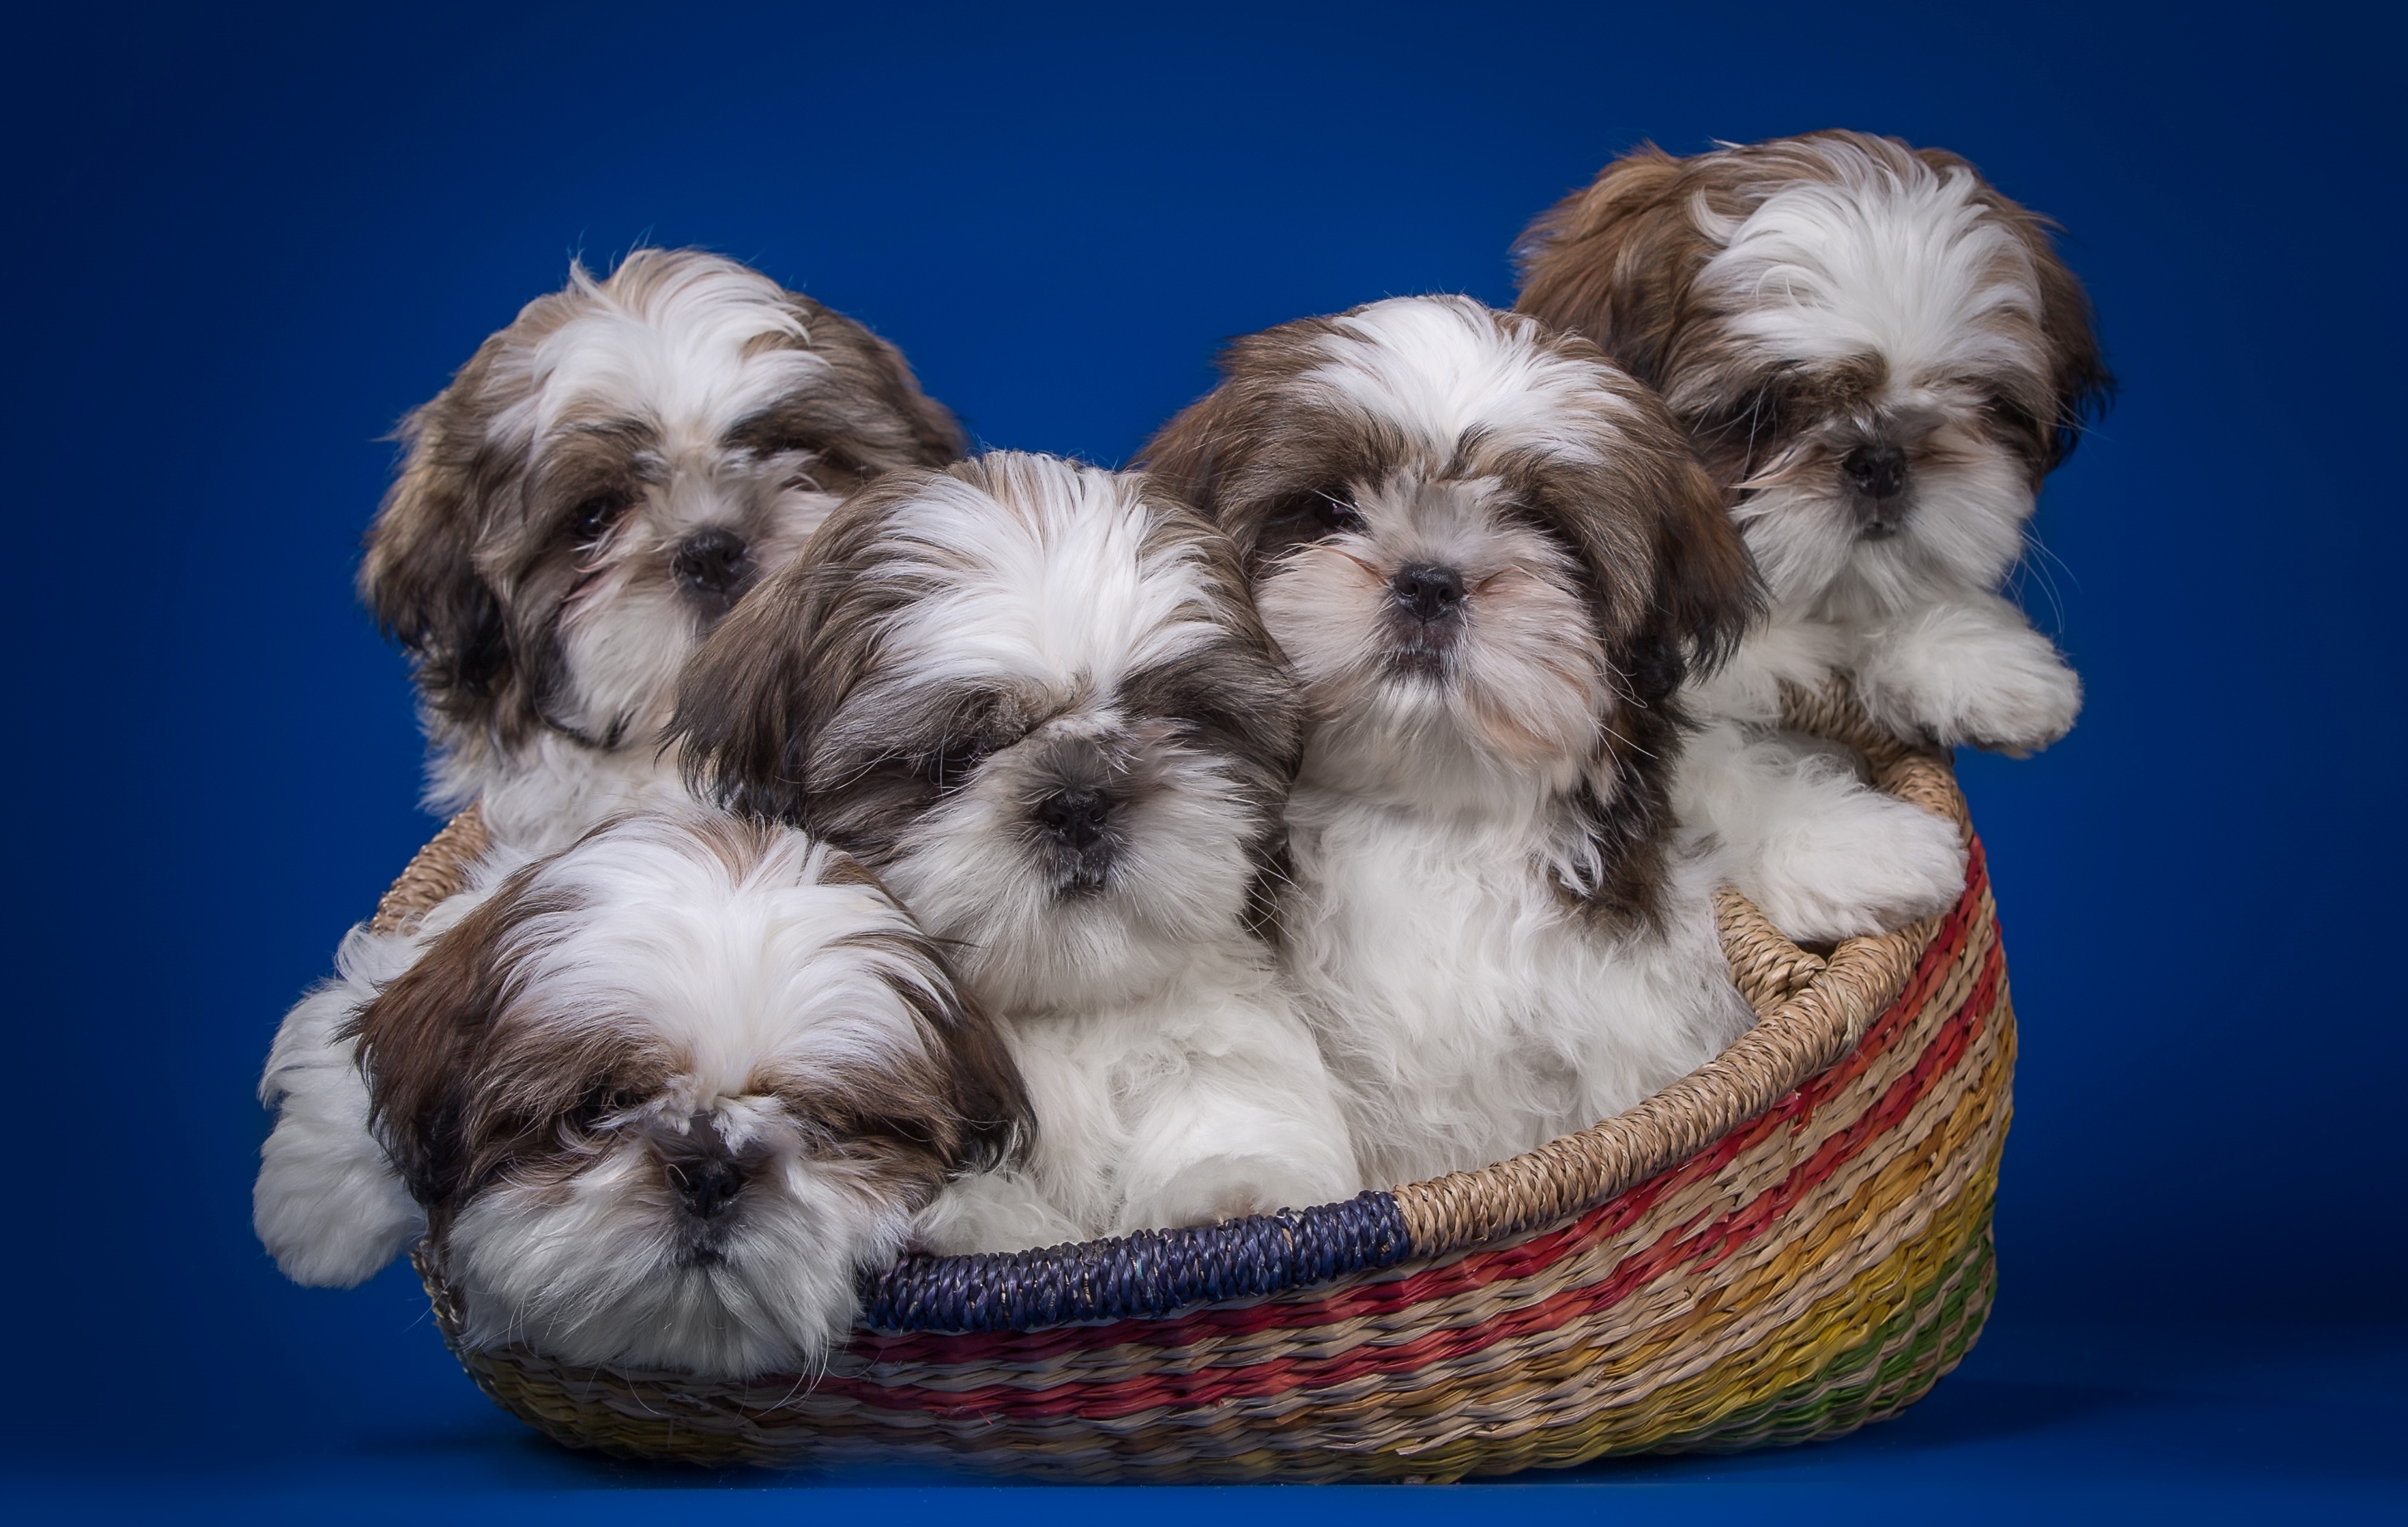 Cachorros de shih tzu nunha cesta